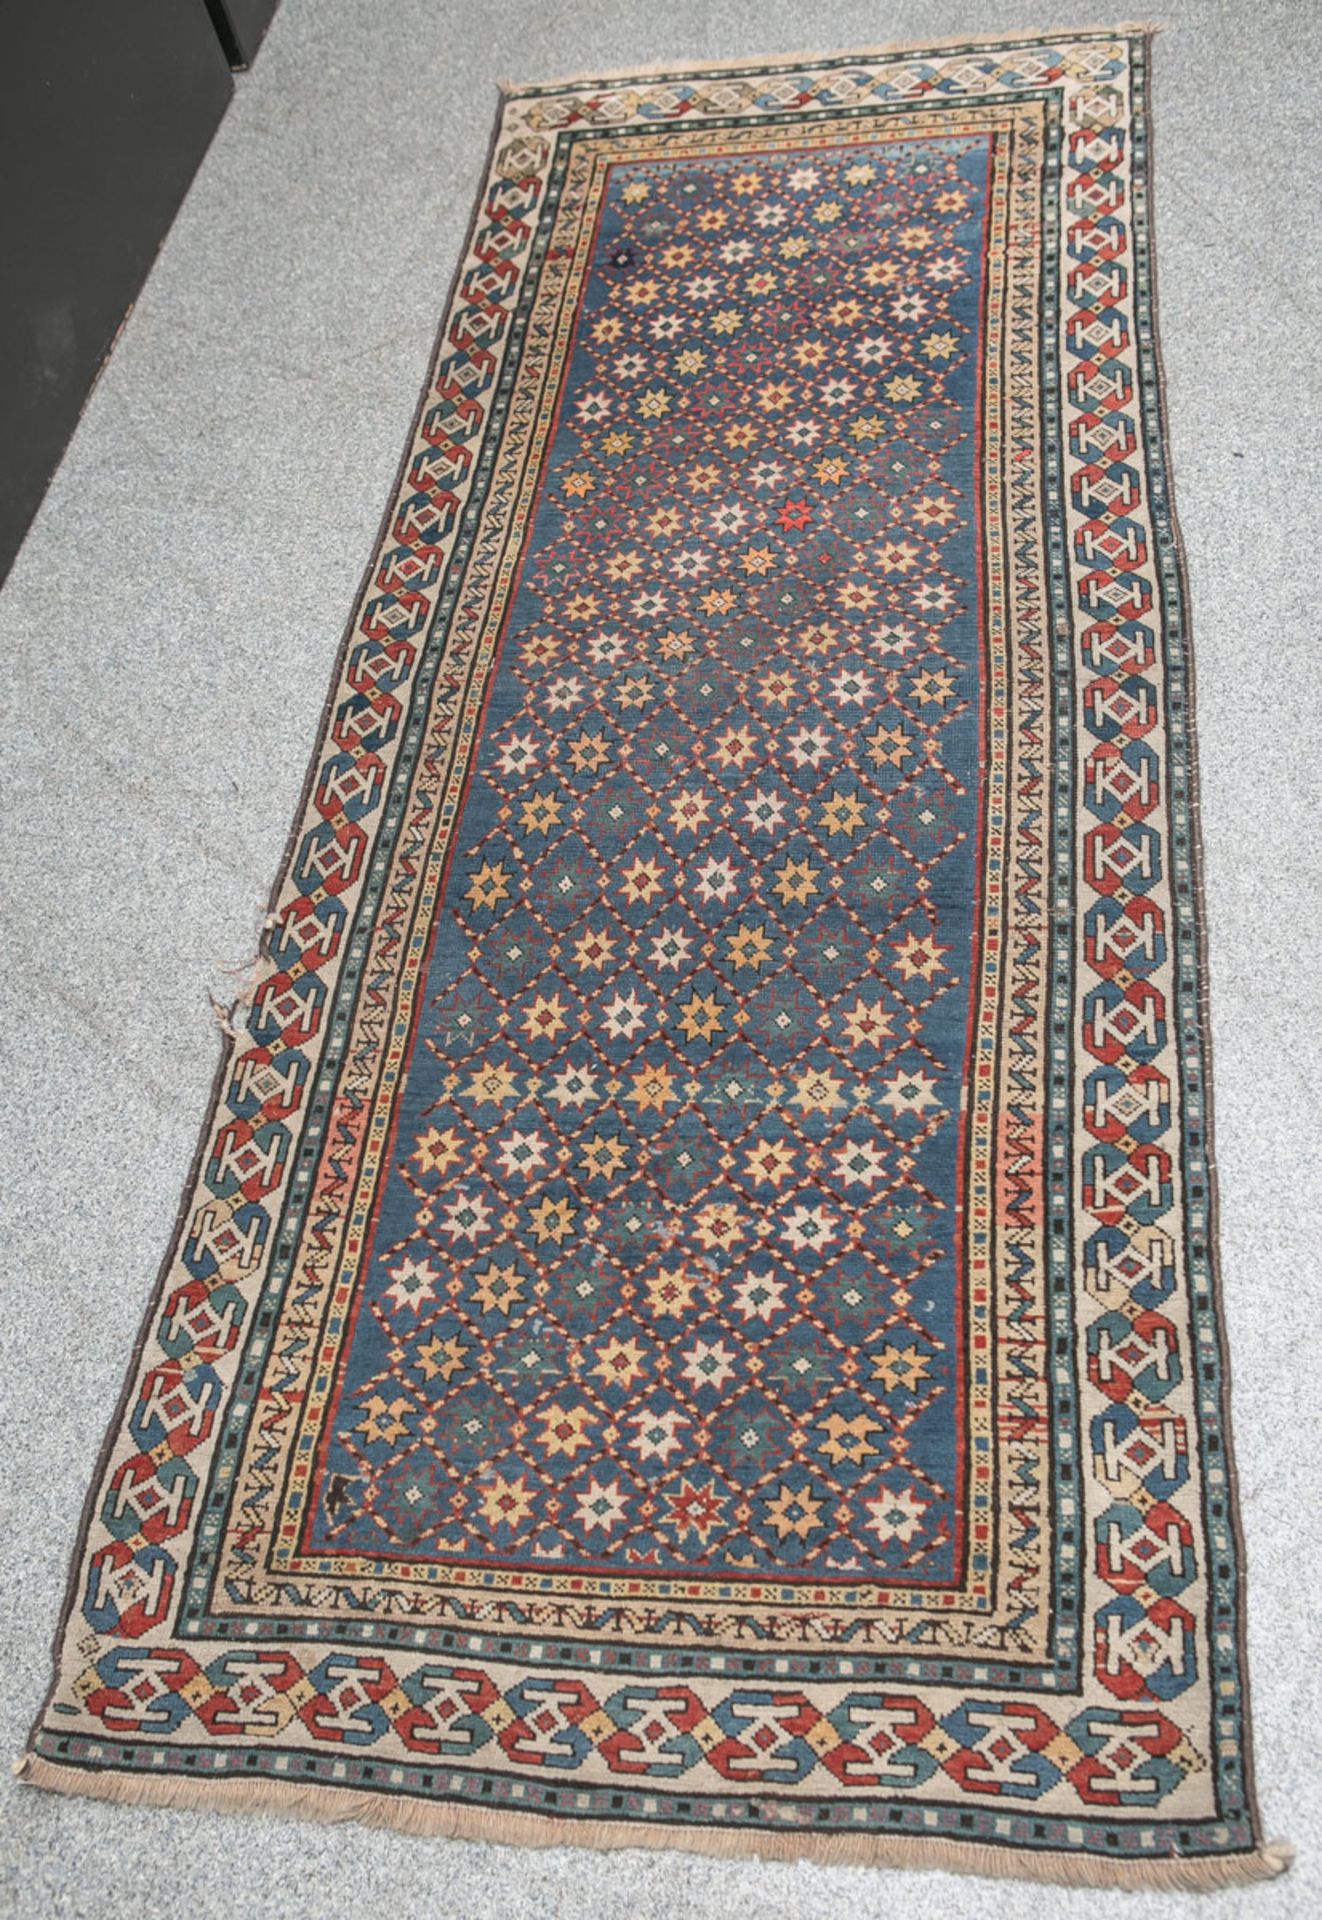 Sternen-Kasak Orientteppich (ca. 150-200 Jahre alt), ca. 90 x 220 cm, entstammt Sammlung